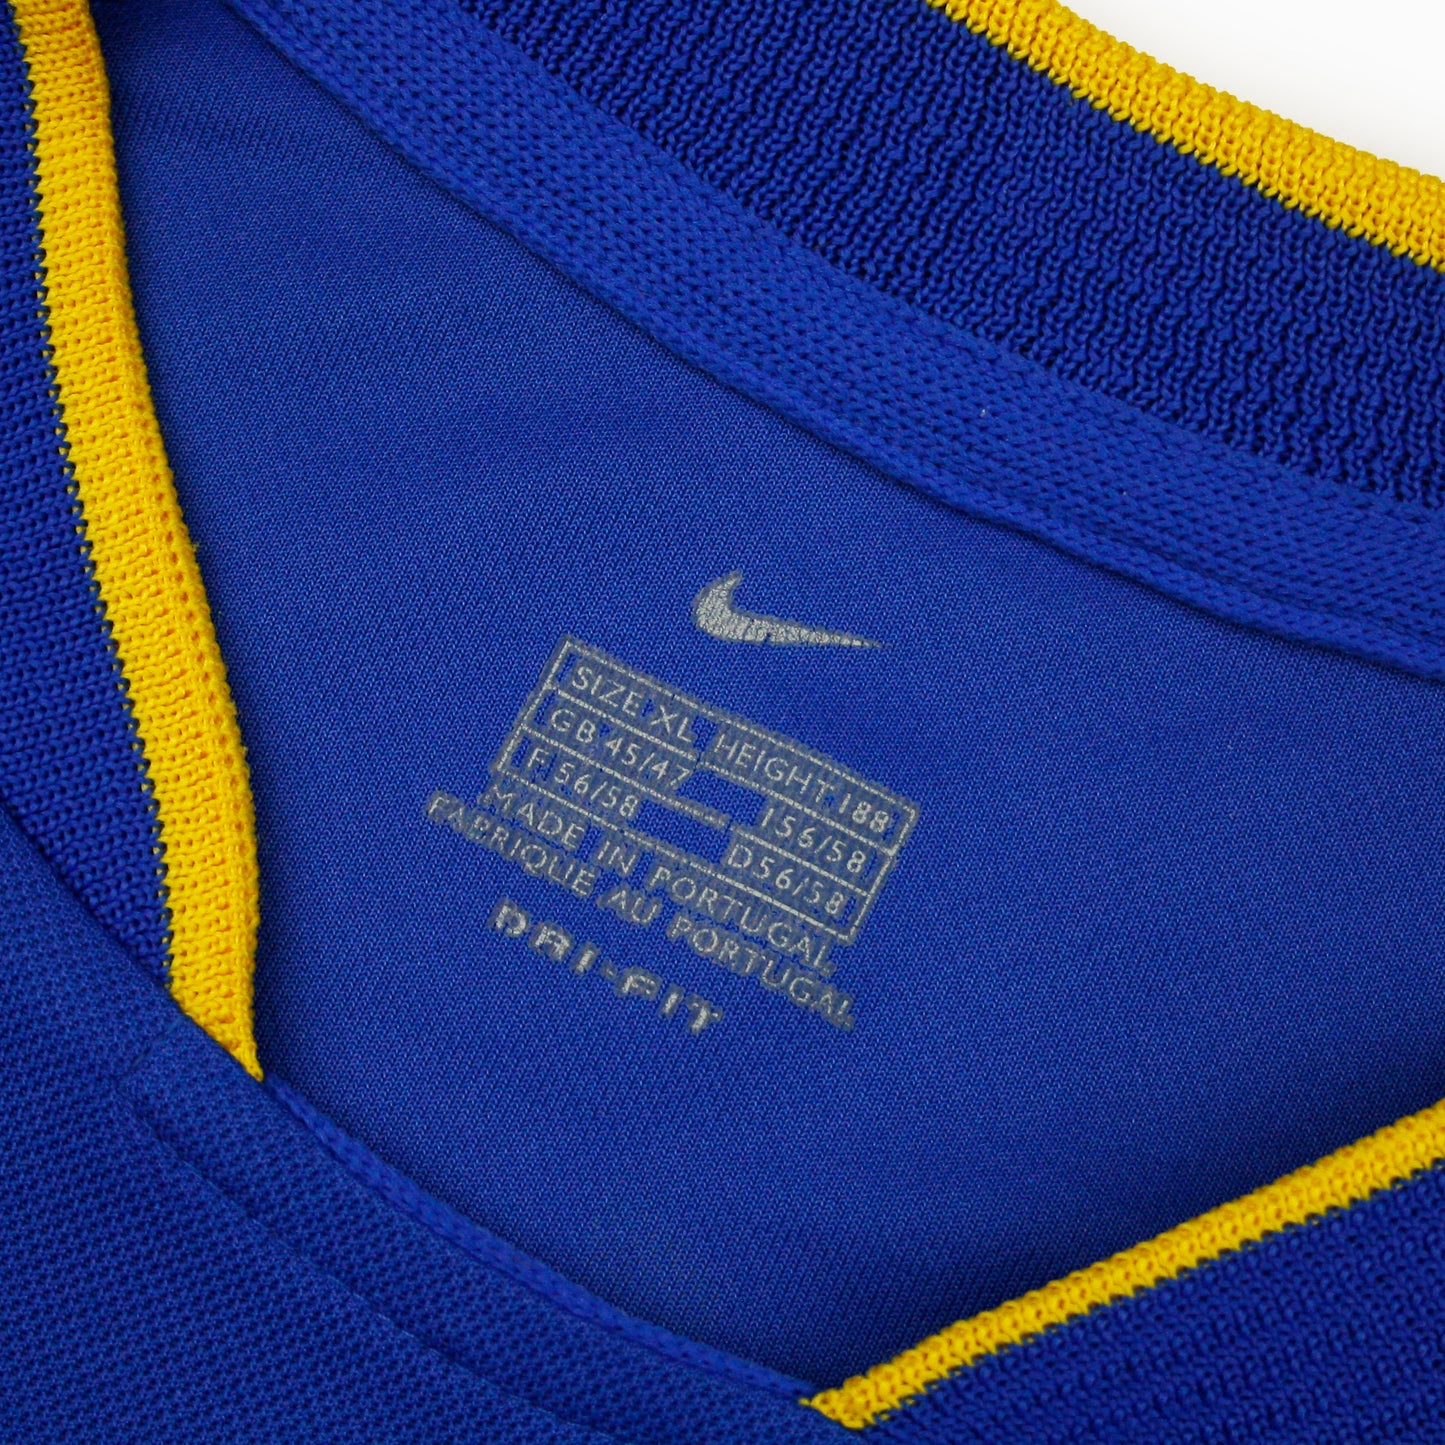 Boca Juniors 01/02 • Camiseta Local • XL